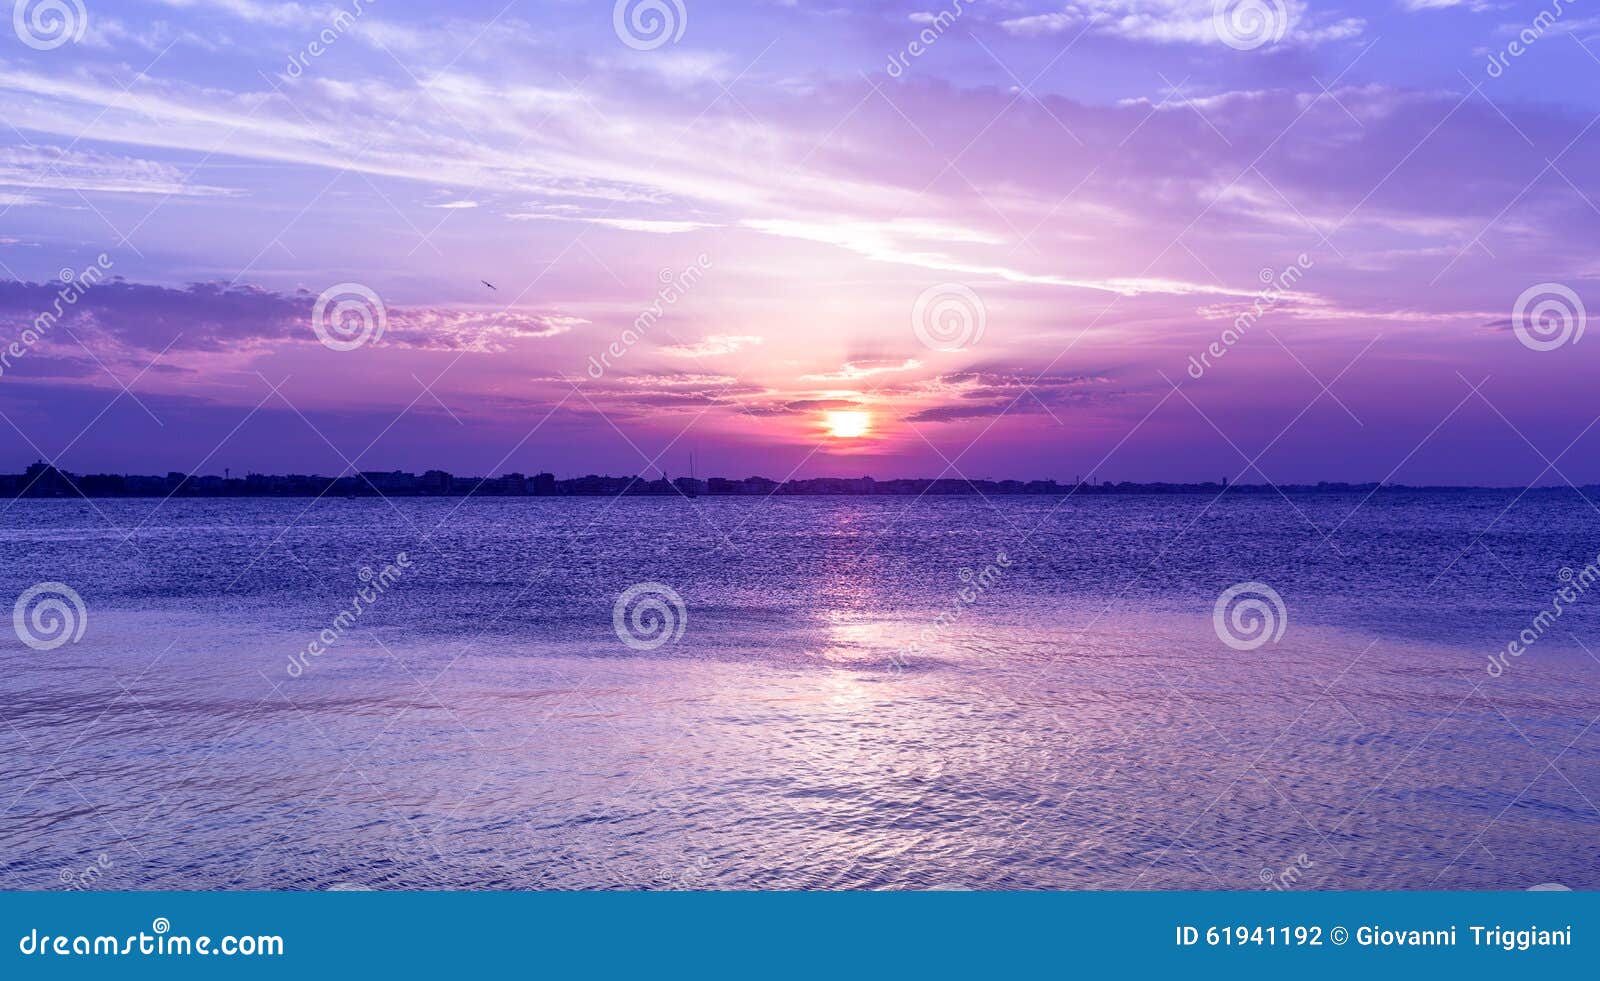 amazing purple sky sunset over sea . dusk on adriatic sea.